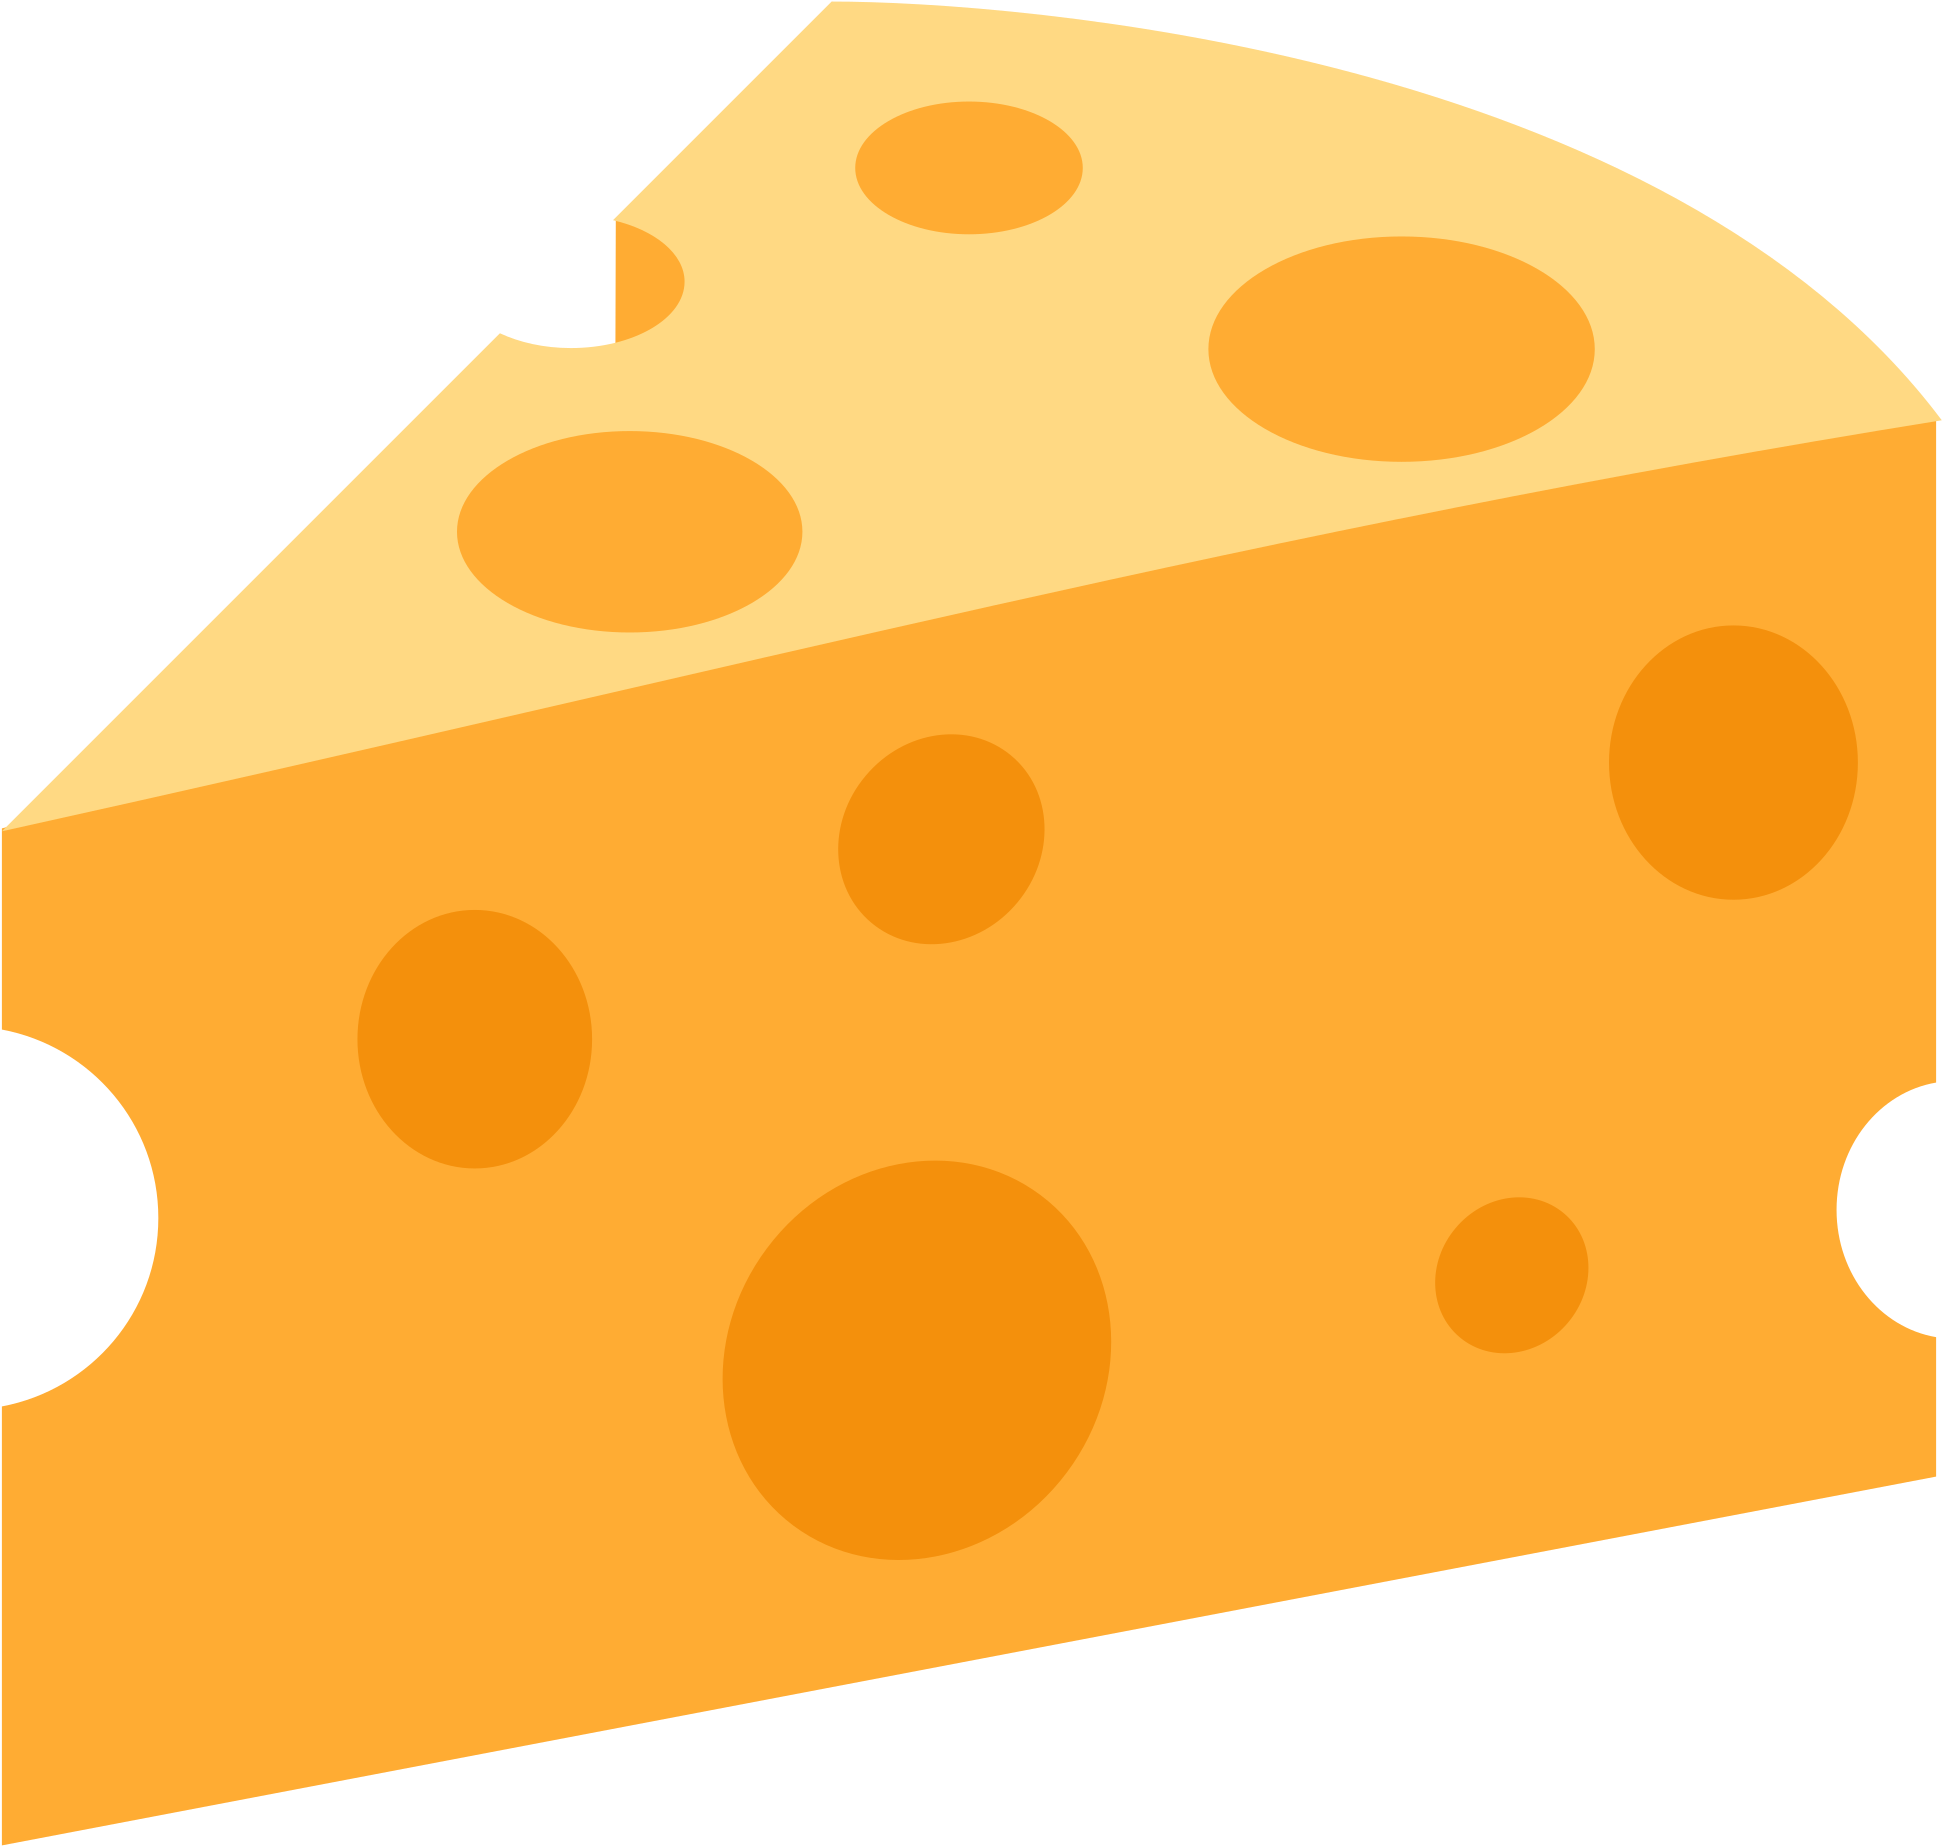 Dairy clipart yello. Cheese wedge emoji png